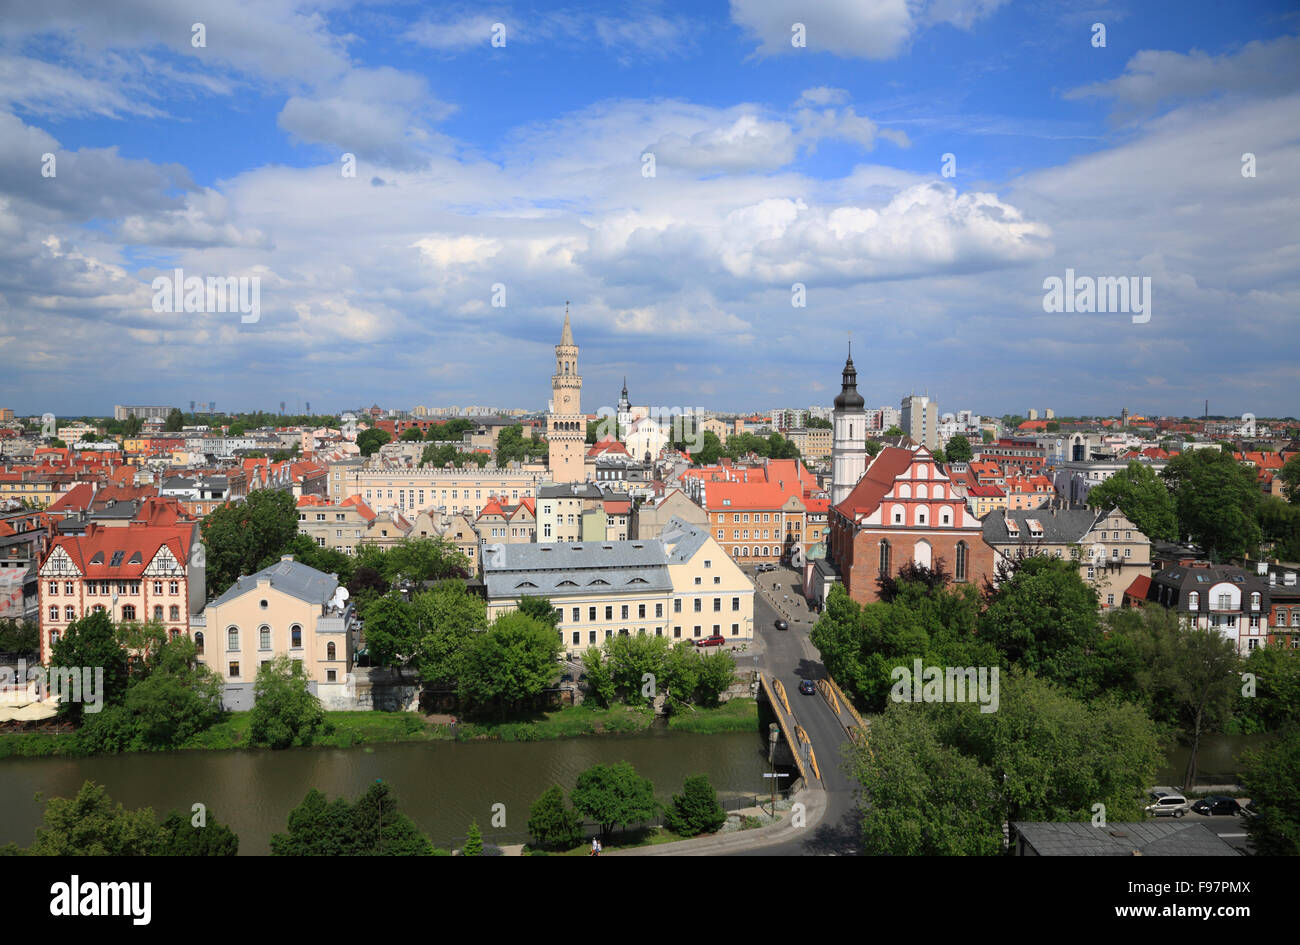 View from Piast tower, Wieza Piastowska (Piastenturm) over city of Opole, Silesia, Poland, Europe Stock Photo